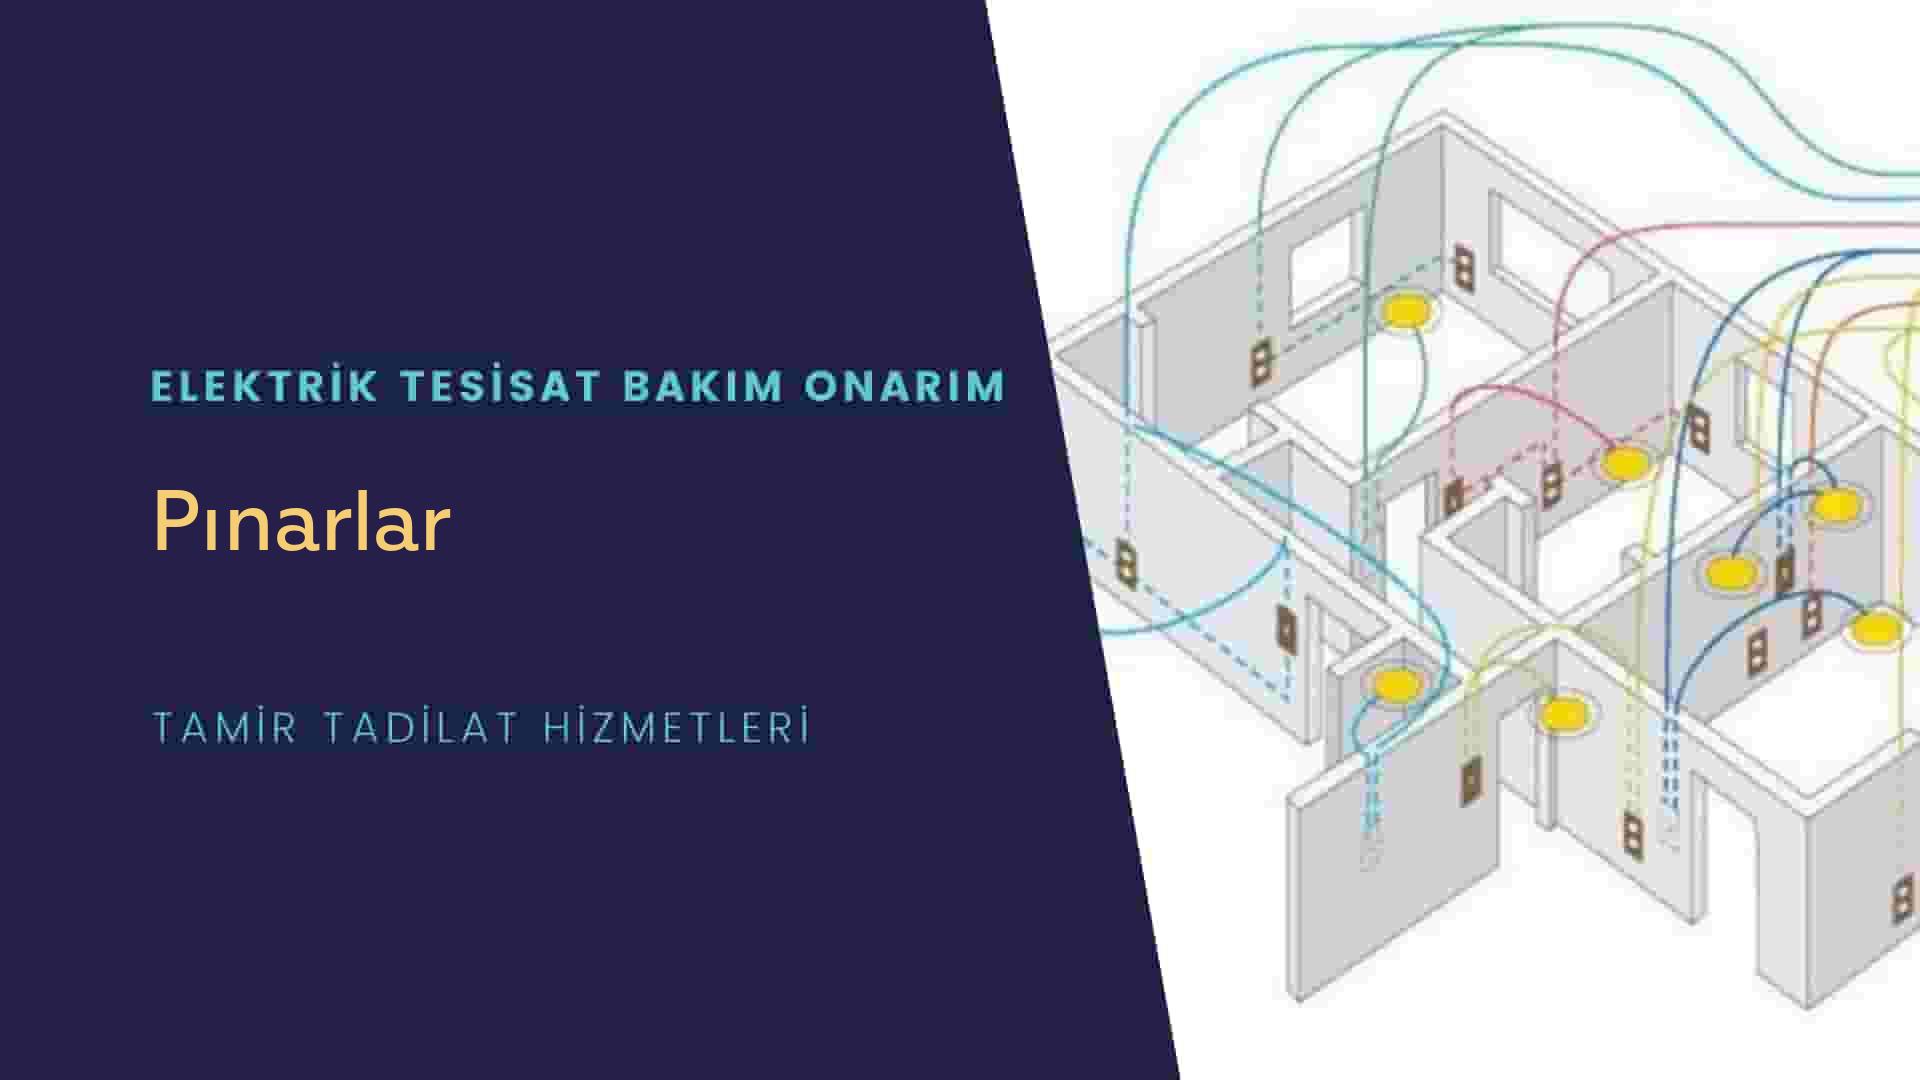 Pınarlar'da elektrik tesisatı ustalarımı arıyorsunuz doğru adrestenizi Pınarlar elektrik tesisatı ustalarımız 7/24 sizlere hizmet vermekten mutluluk duyar.